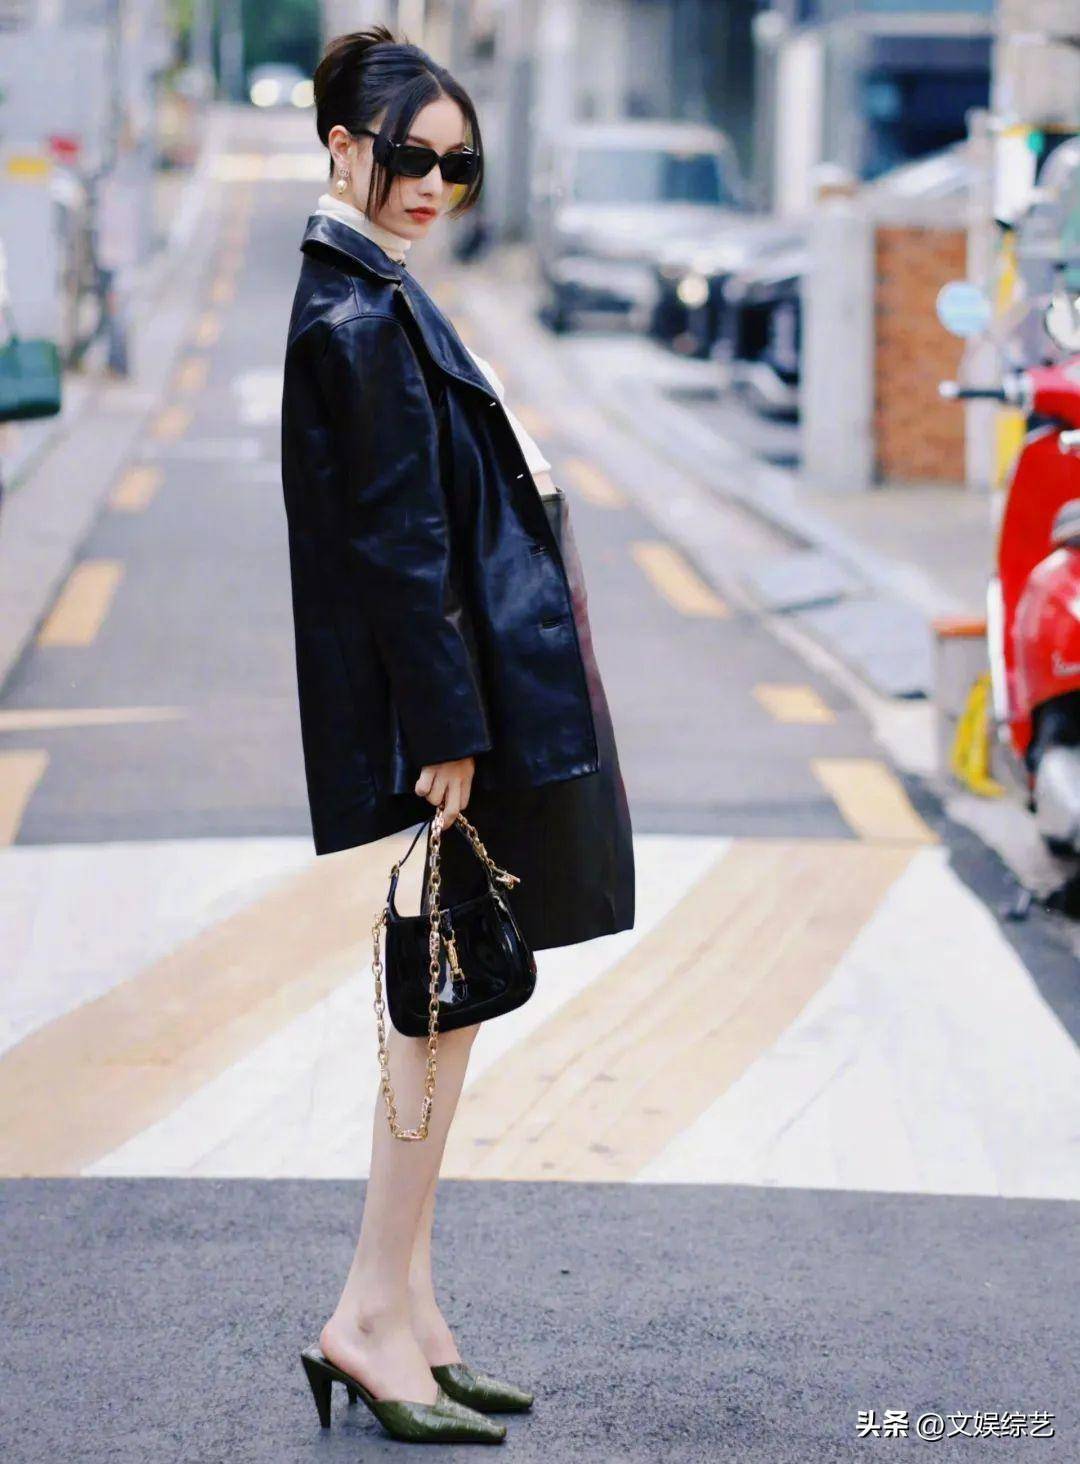 倪妮现身韩国街头摆姿势拍照,身穿紧身衣皮裤短裙,十分迷人迷人